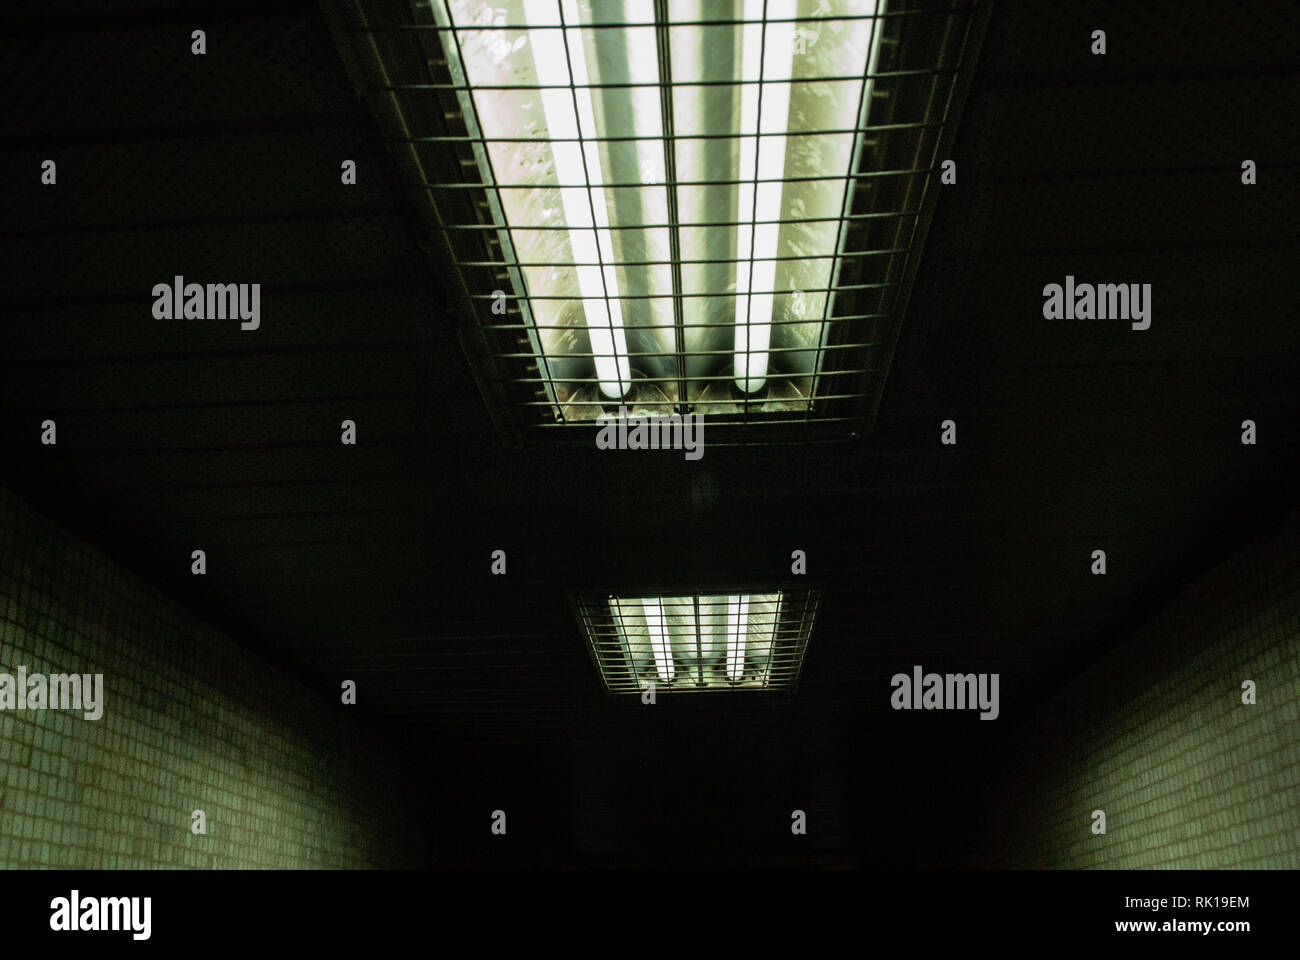 Corridoio scuro in toni di colore verdastro con illuminazione. immagine con un numero sufficiente di prospettiva. Foto Stock